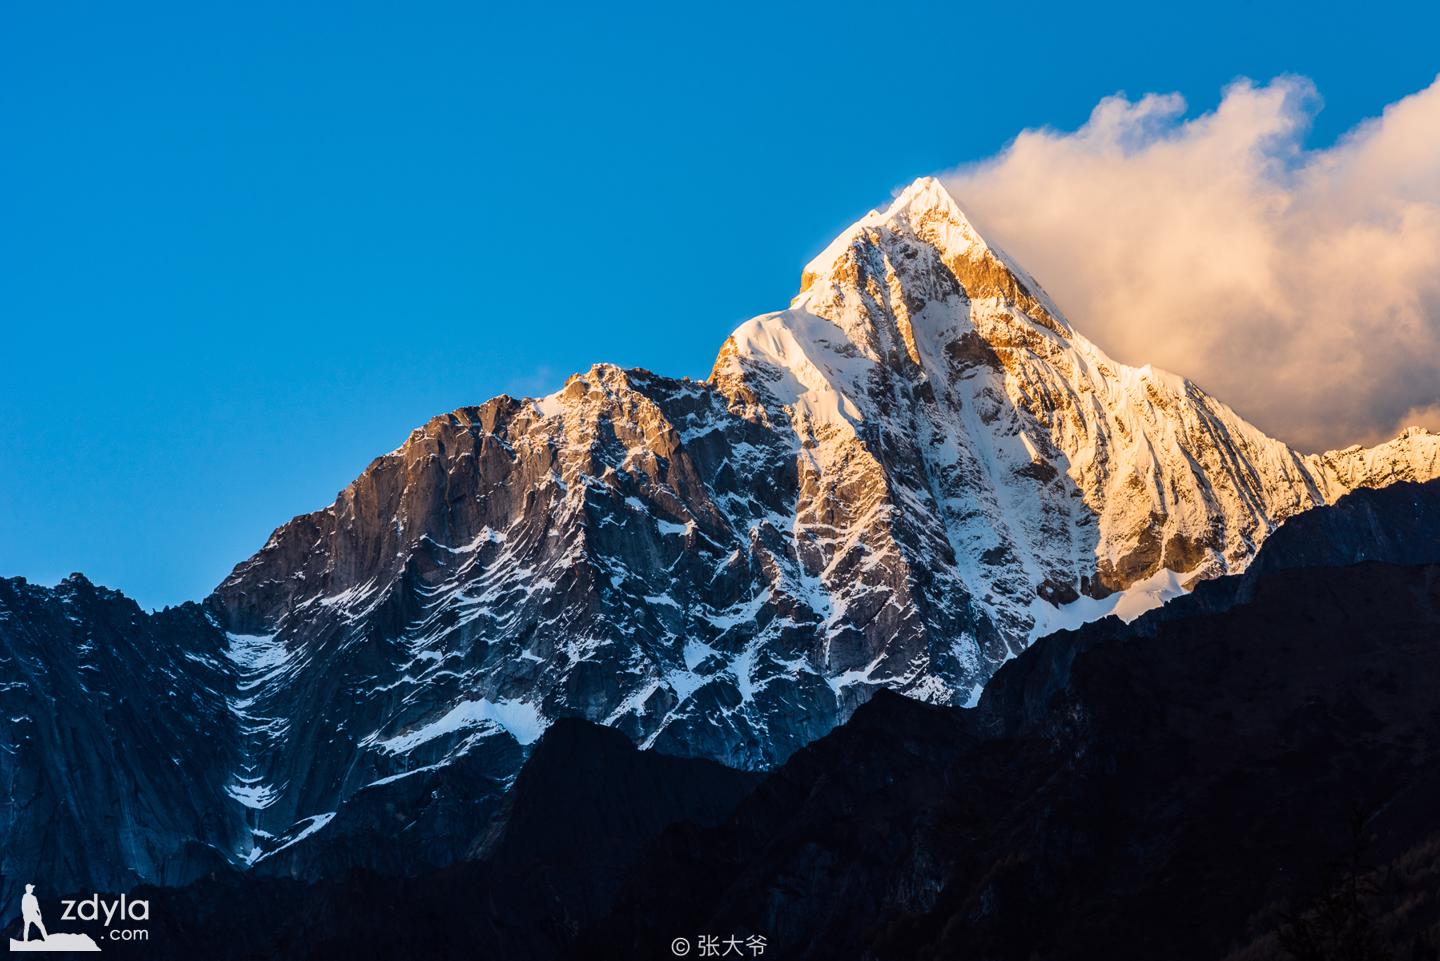 Yaomei peak